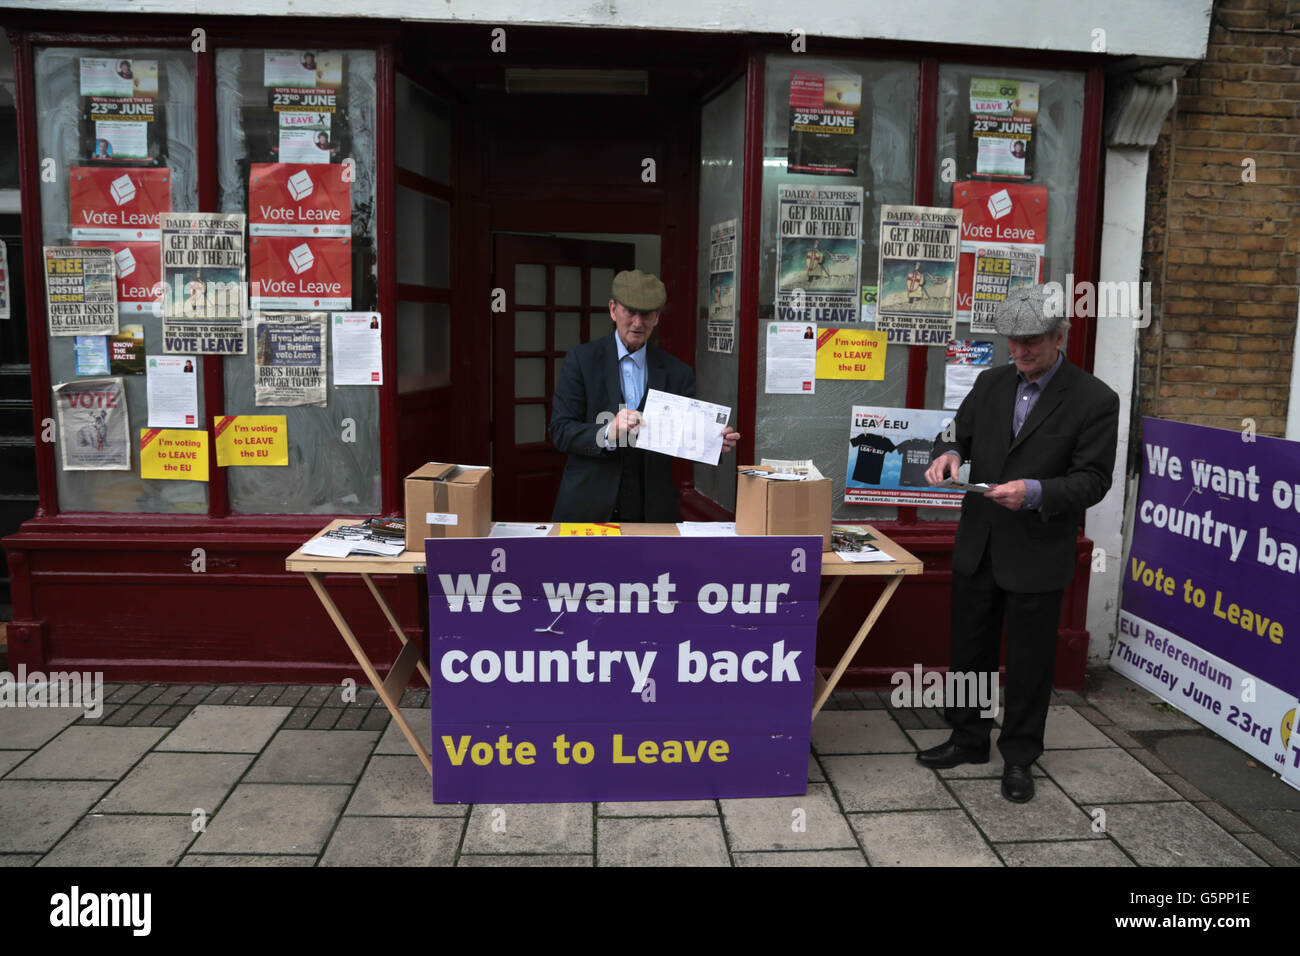 Londra, Regno Unito. Il 23 giugno, 2016. Gli attivisti per incoraggiare le persone a votare per lasciare l'Unione europea. Credito: Thabo Jaiyesimi/Alamy Live News Foto Stock